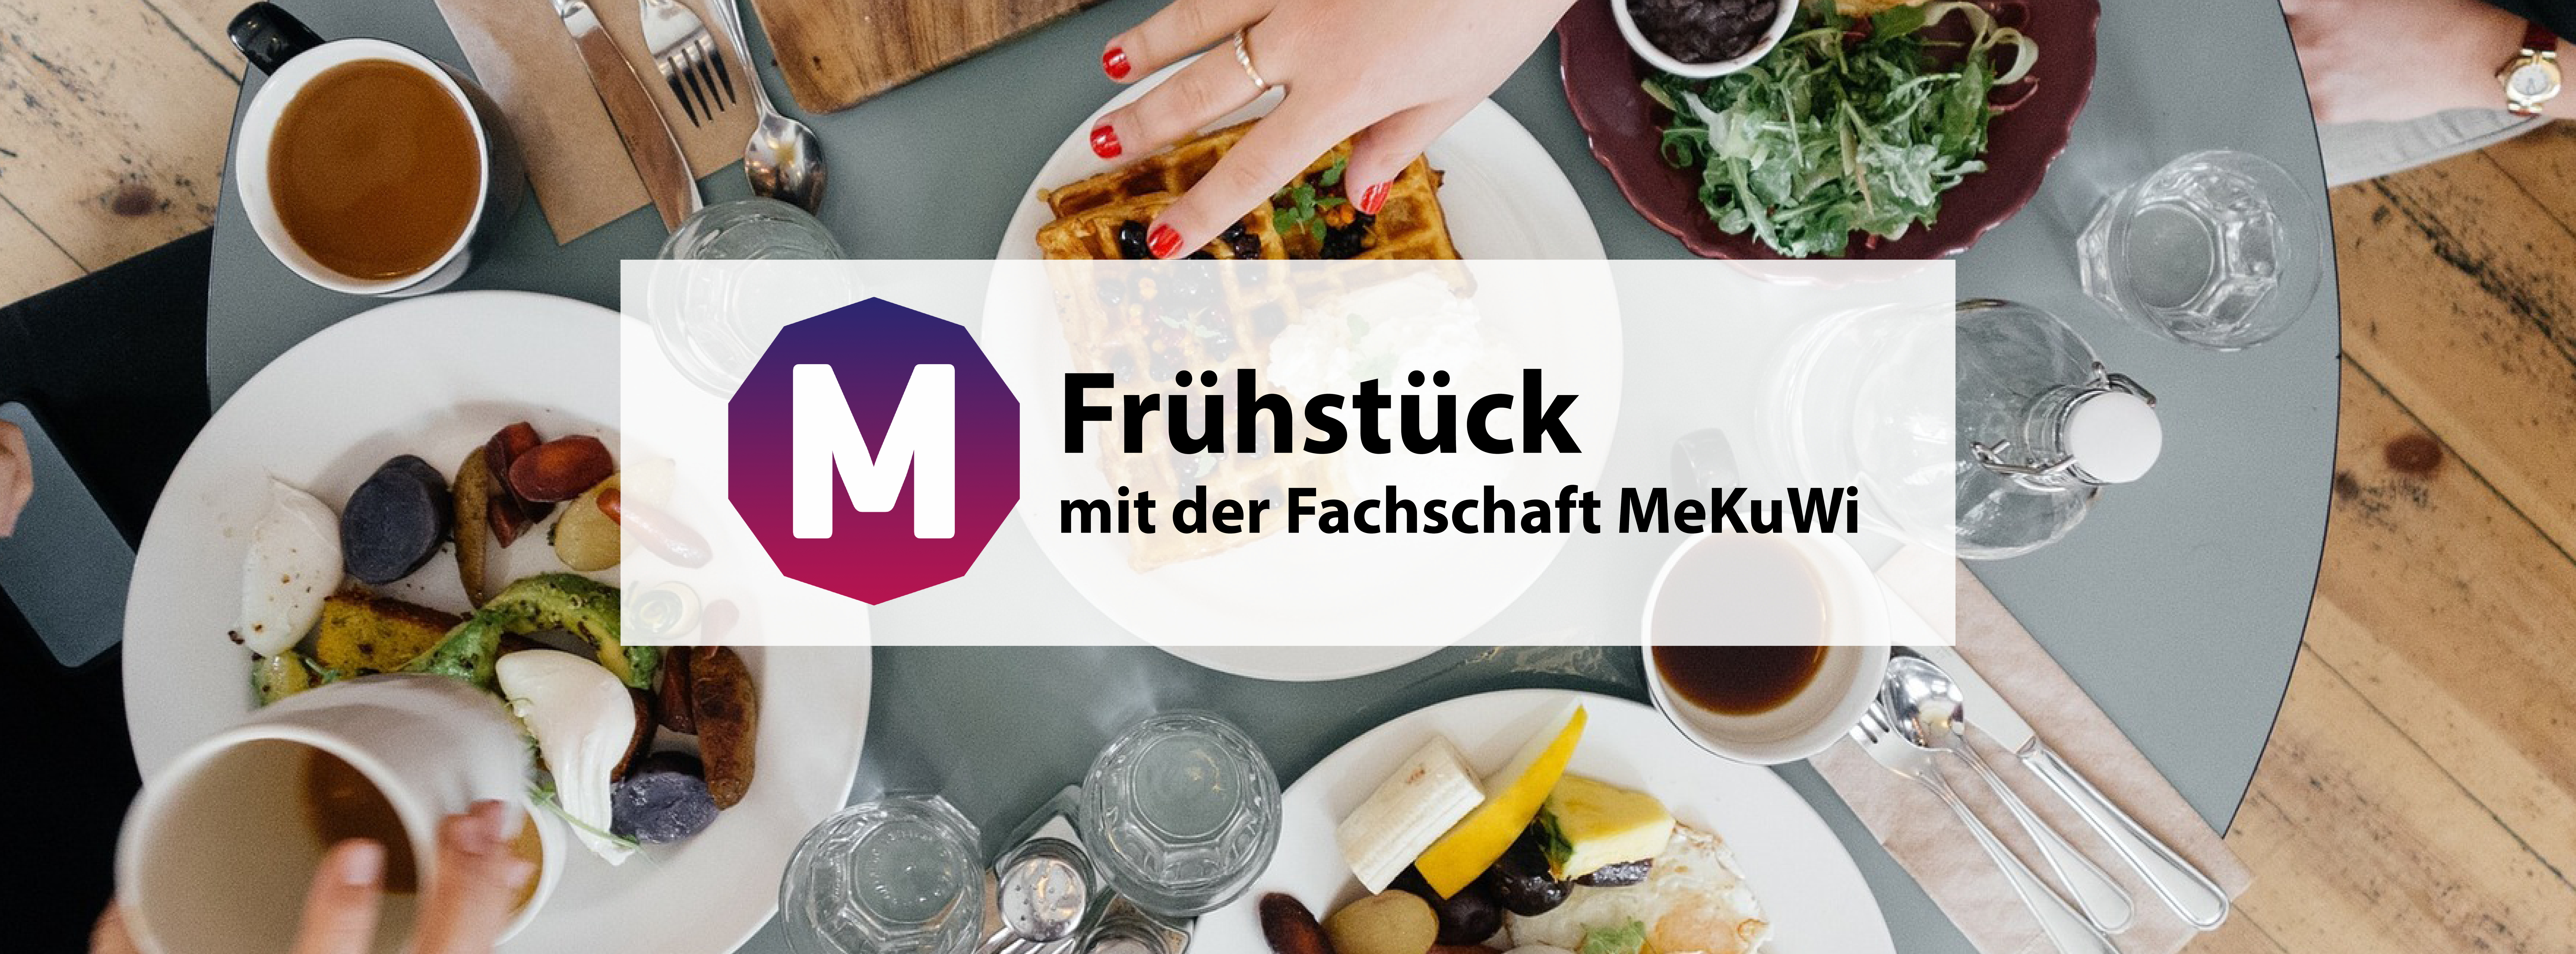 Semesterstart: Frühstück @ S 203, Alte Mensa | Köln | Nordrhein-Westfalen | Deutschland